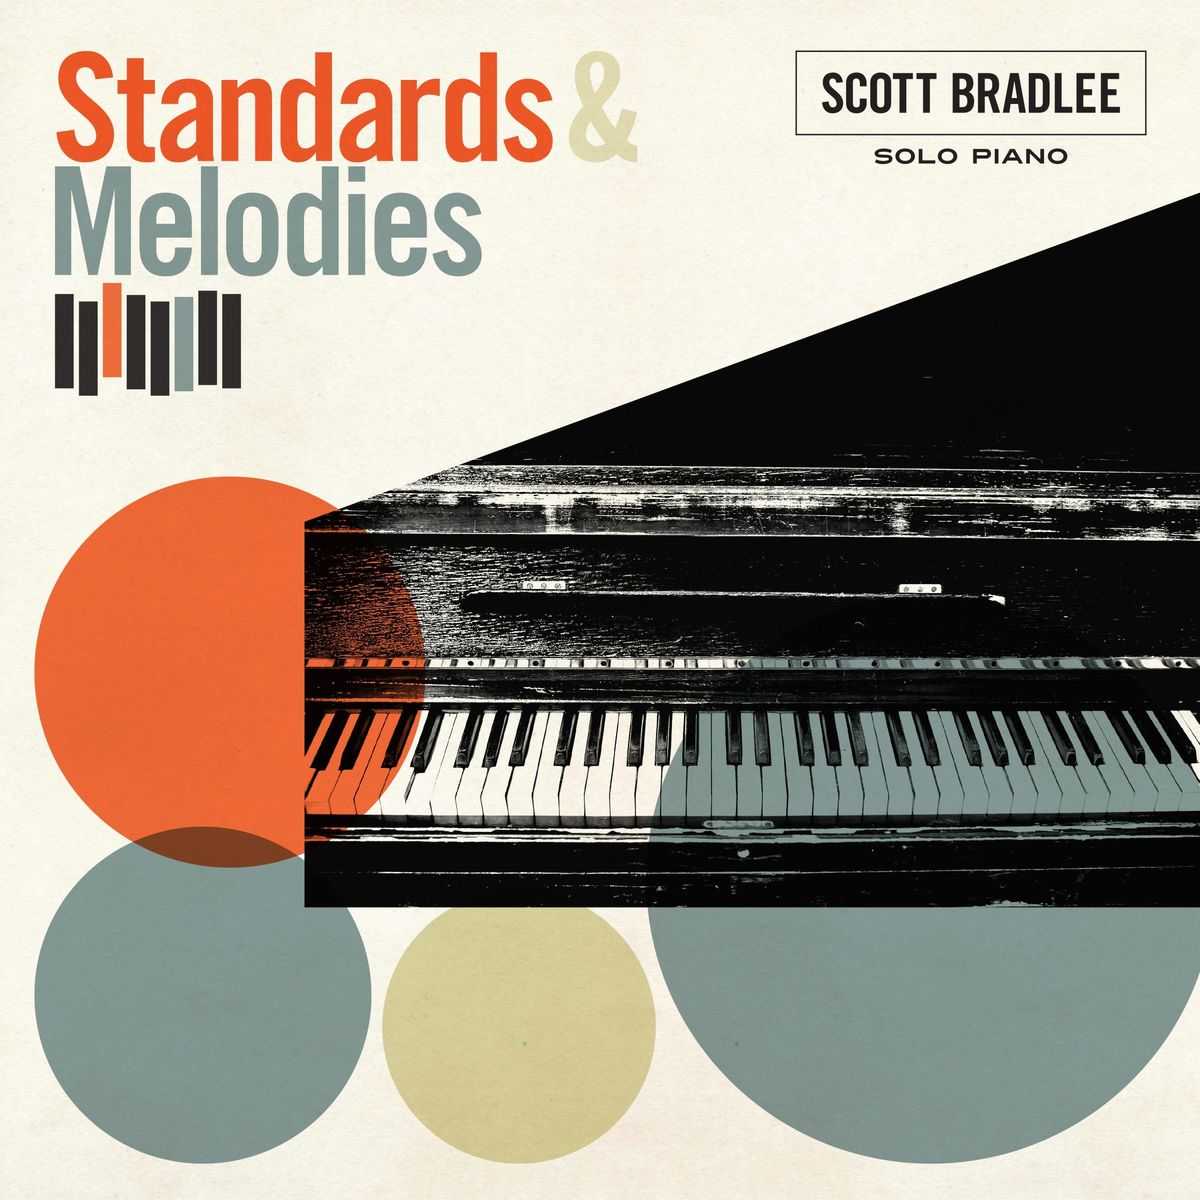 Scott Bradlee - Standards & Melodies